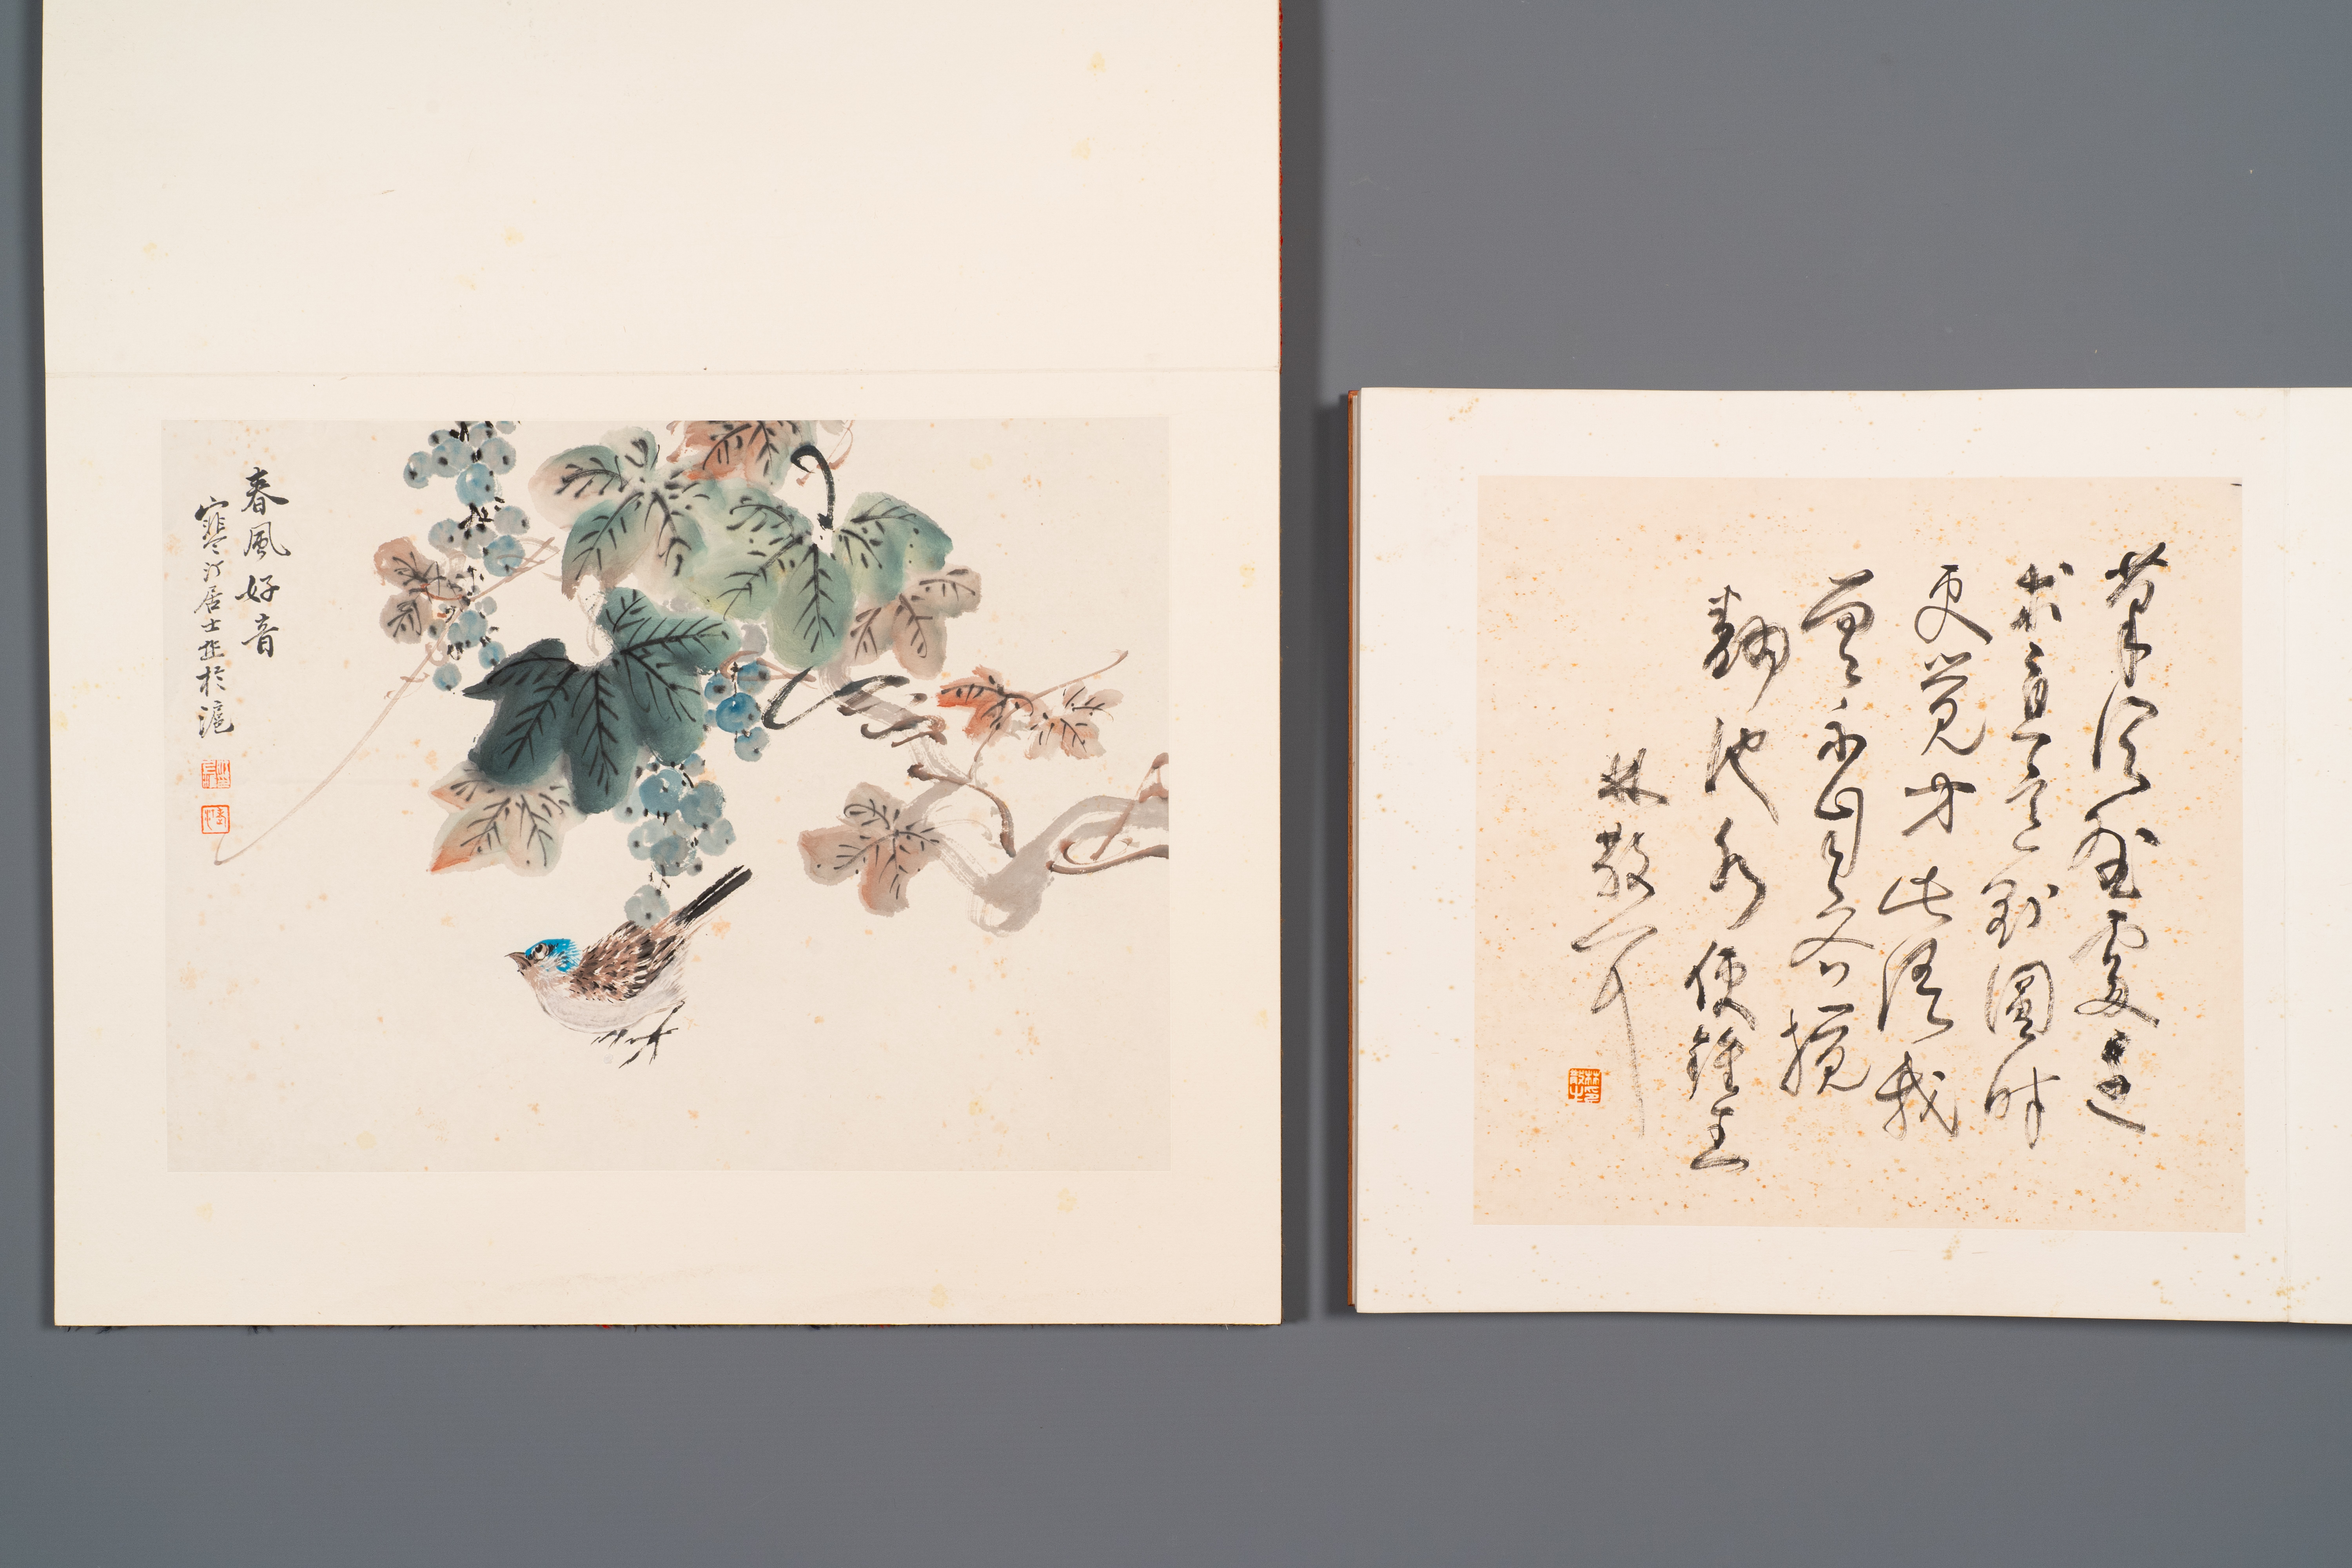 Three albums: 'Jiang Hanting æ±Ÿå¯’æ±€ (1904-1963), Lin Sanzhi æž—æ•£ä¹‹ (1898-1989) and Qi Gong å¯ - Image 7 of 23